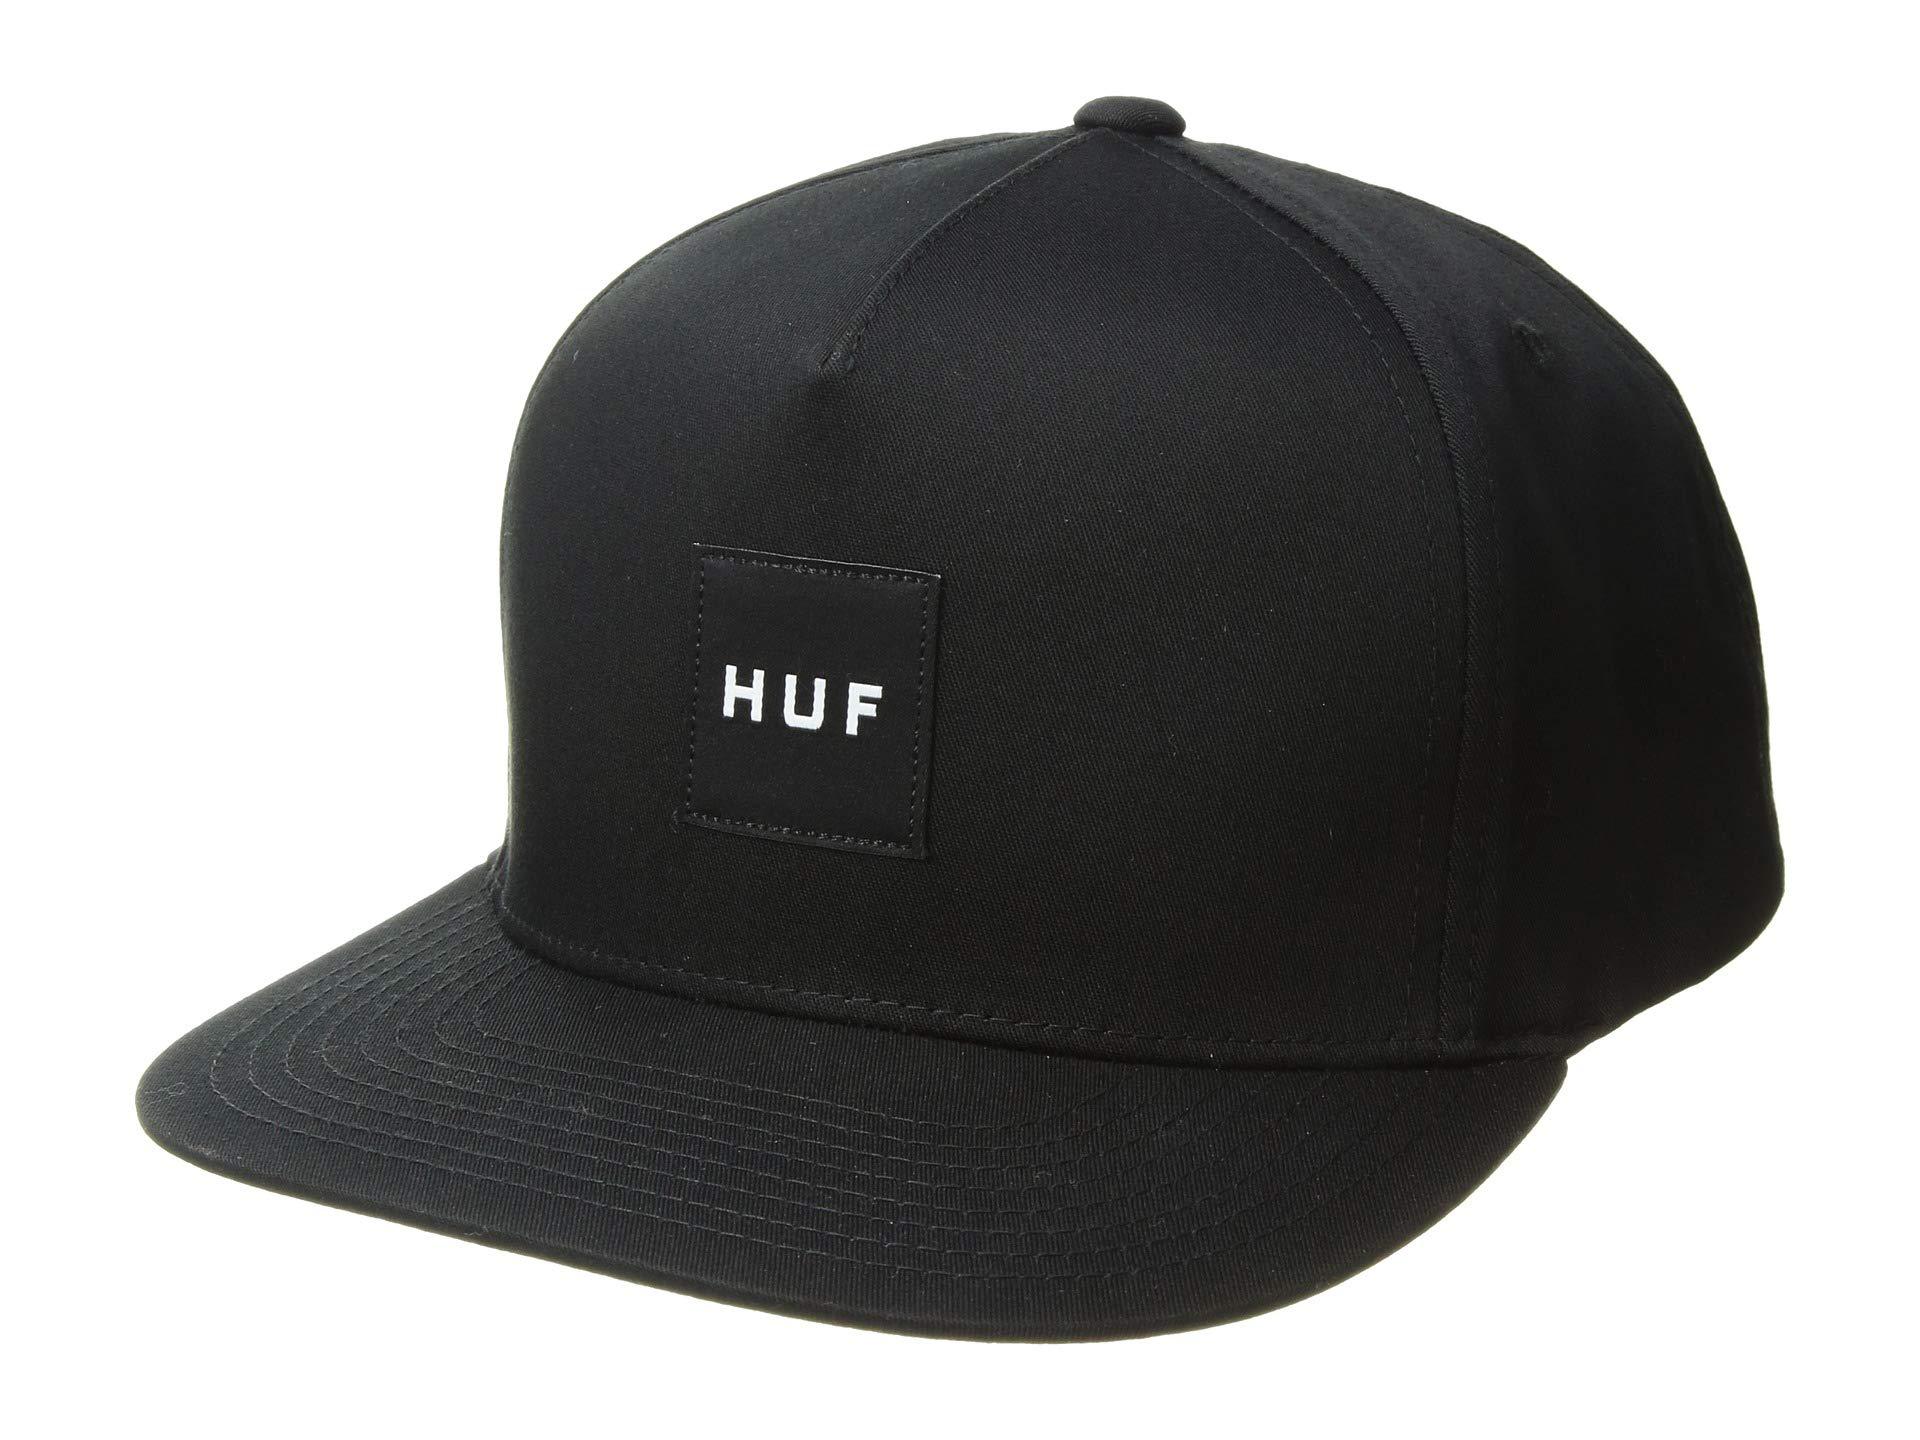 Huf Box Logo Snapback Cap in Black for Men - Lyst